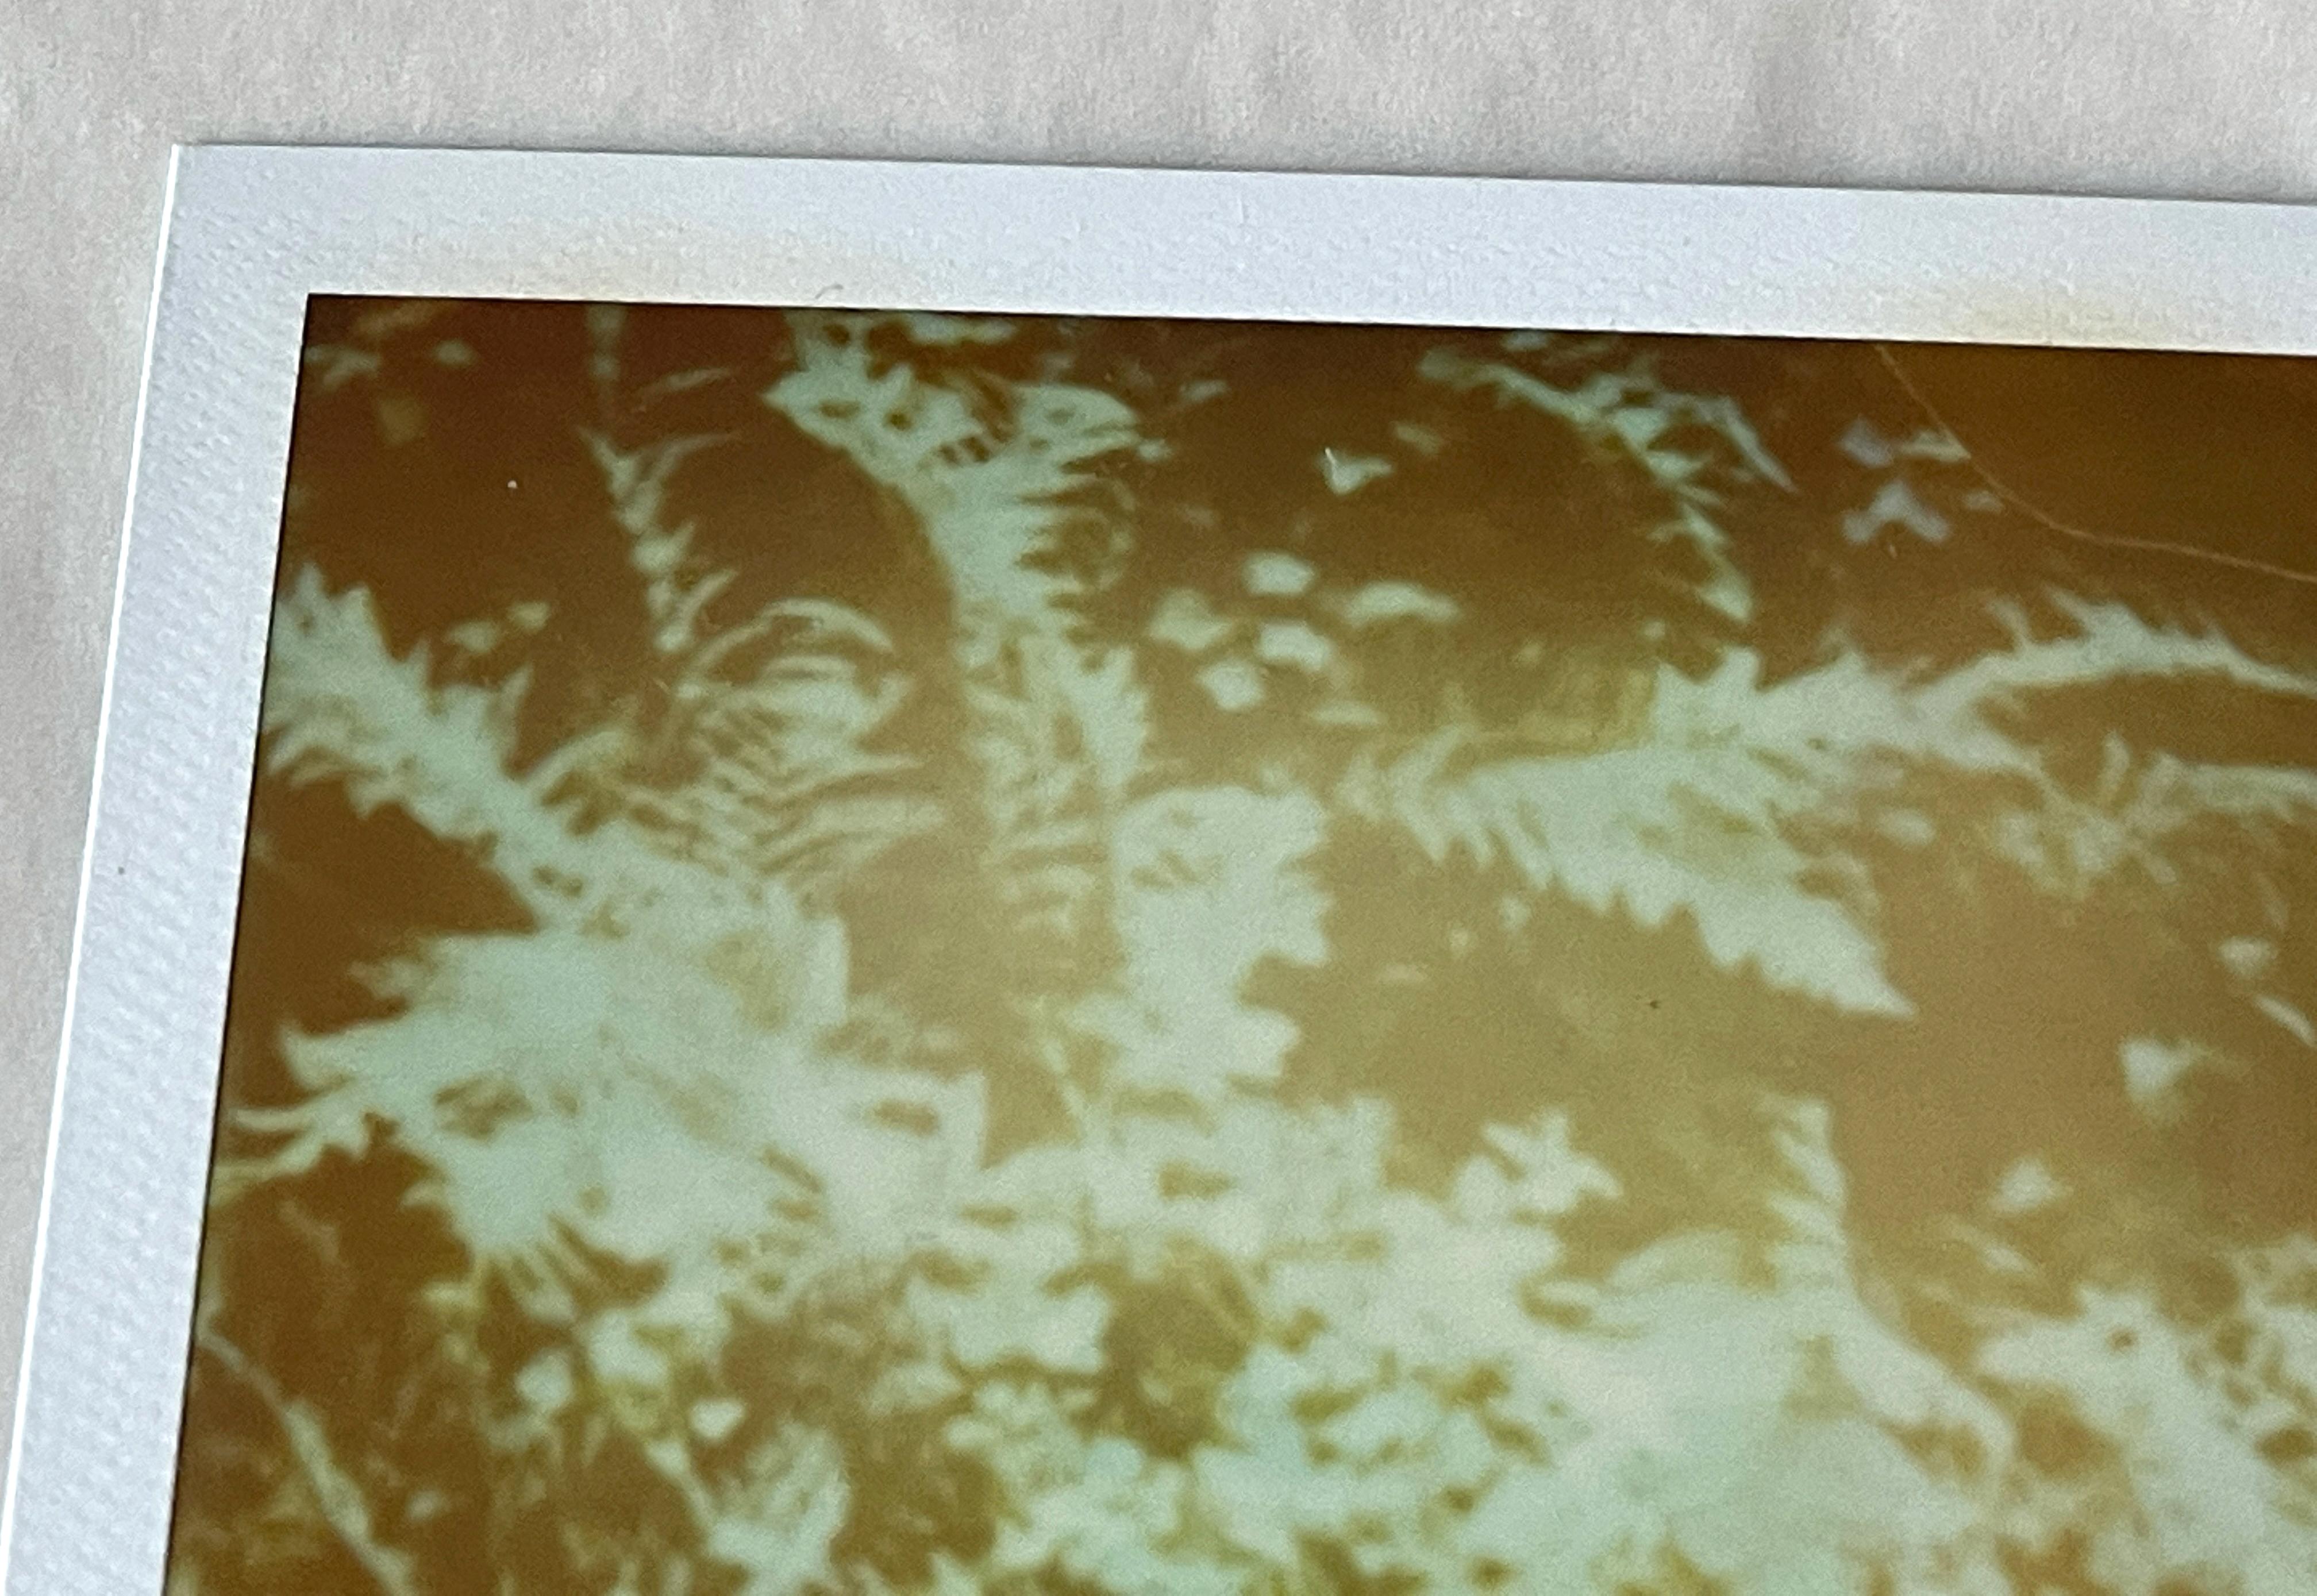 Märchen, Triptychon - 2004

Polaroid - 3 Unikate 1/1, 
7.8 x 7,7cm (Bildfläche)
jeweils 10,7 x 8,7 cm (einschließlich weißem Polaroidrahmen).
Verso signiert. 
Ungerahmt. 

Stefanie Schneiders schillernde Situationen spielen sich im amerikanischen